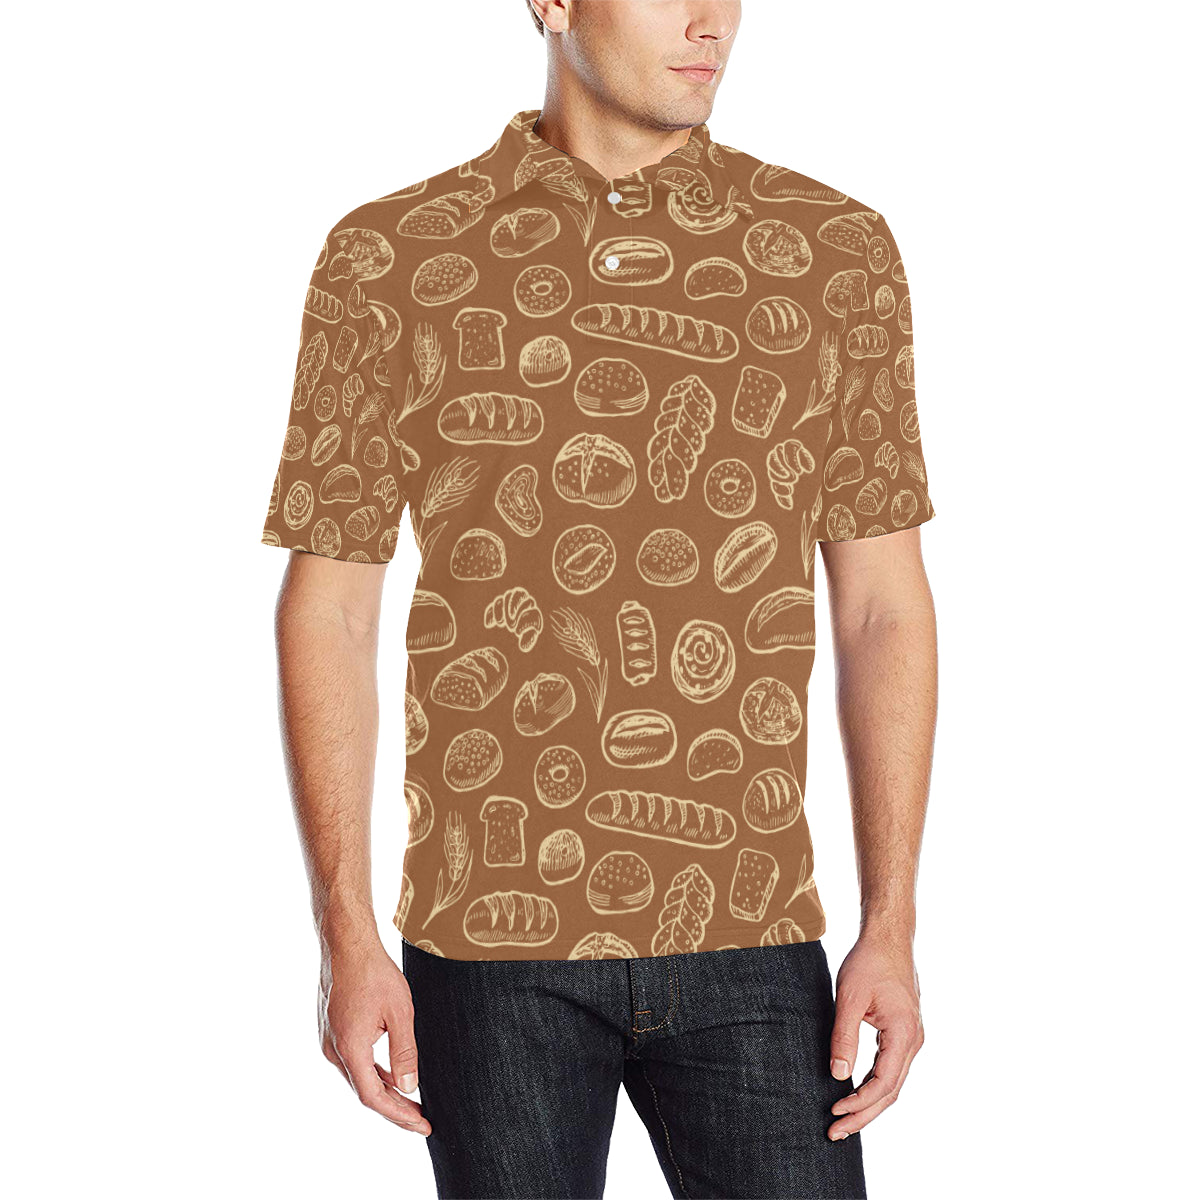 Bread Pattern Print Design 03 Men Polo Shirt